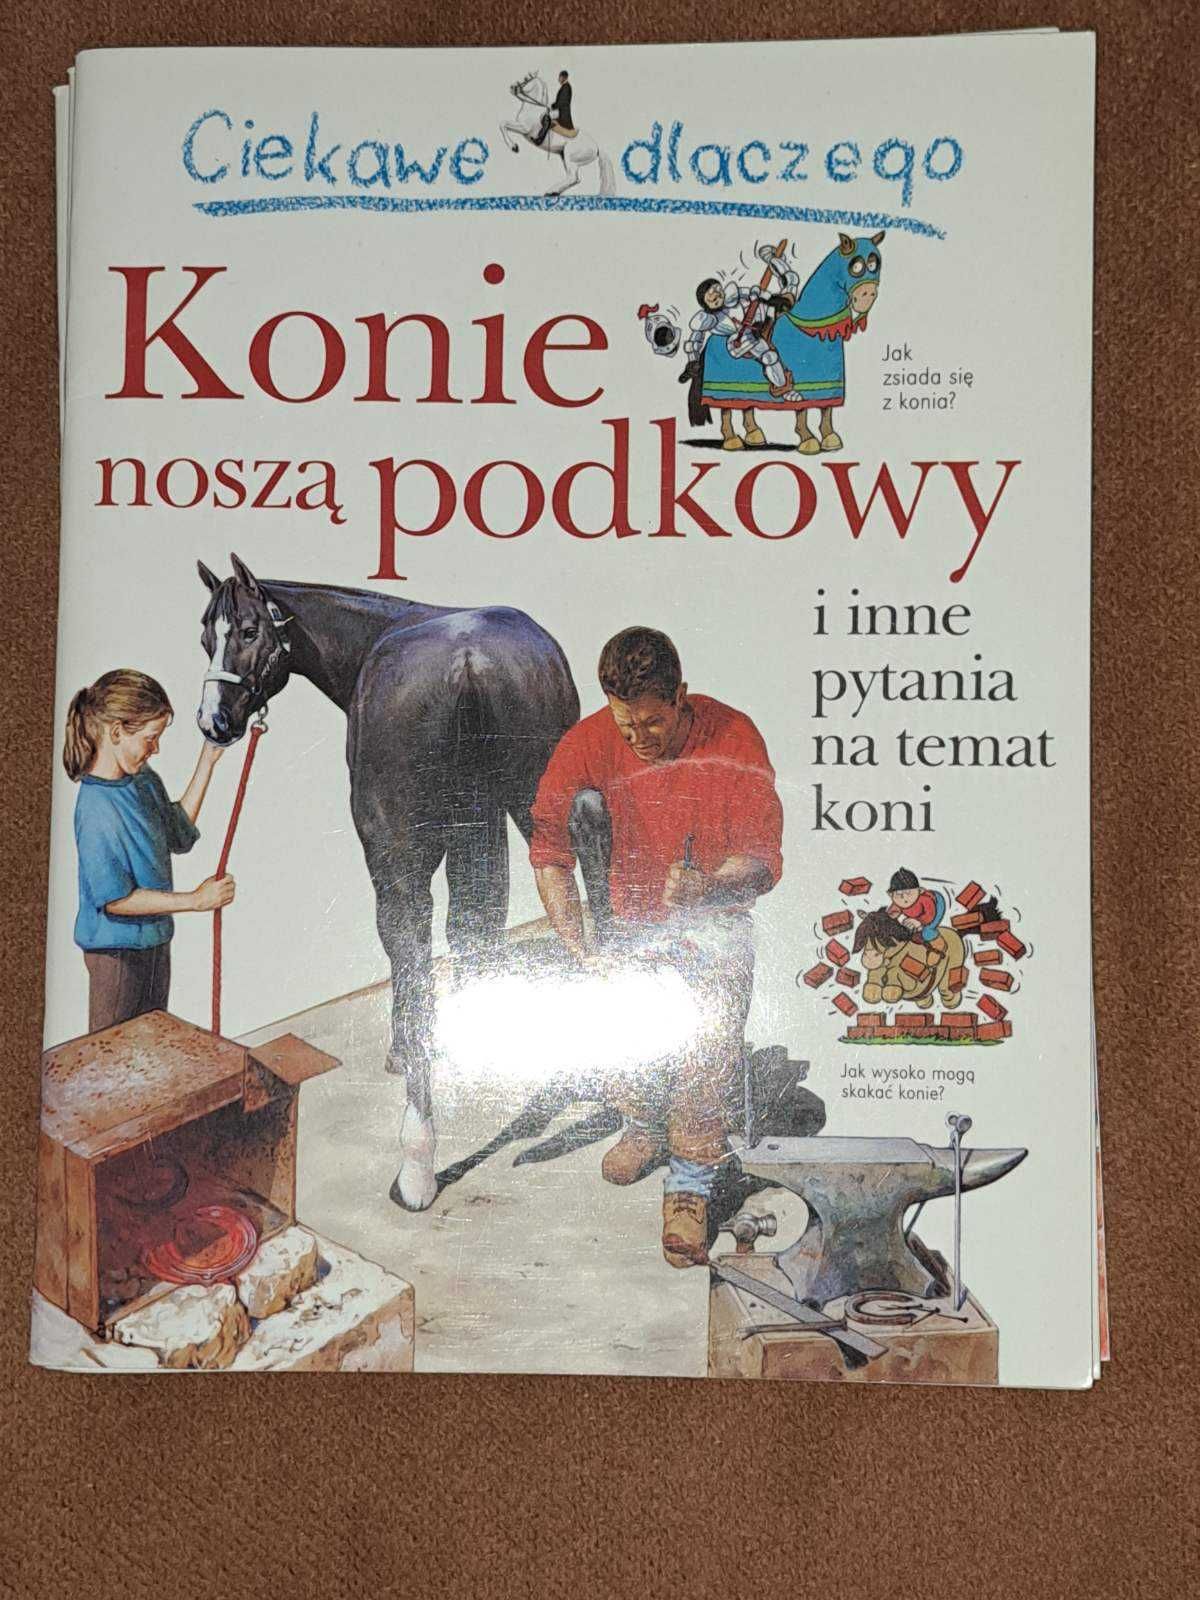 Серия книг "Интересно, почему" на польском языке часть 2.